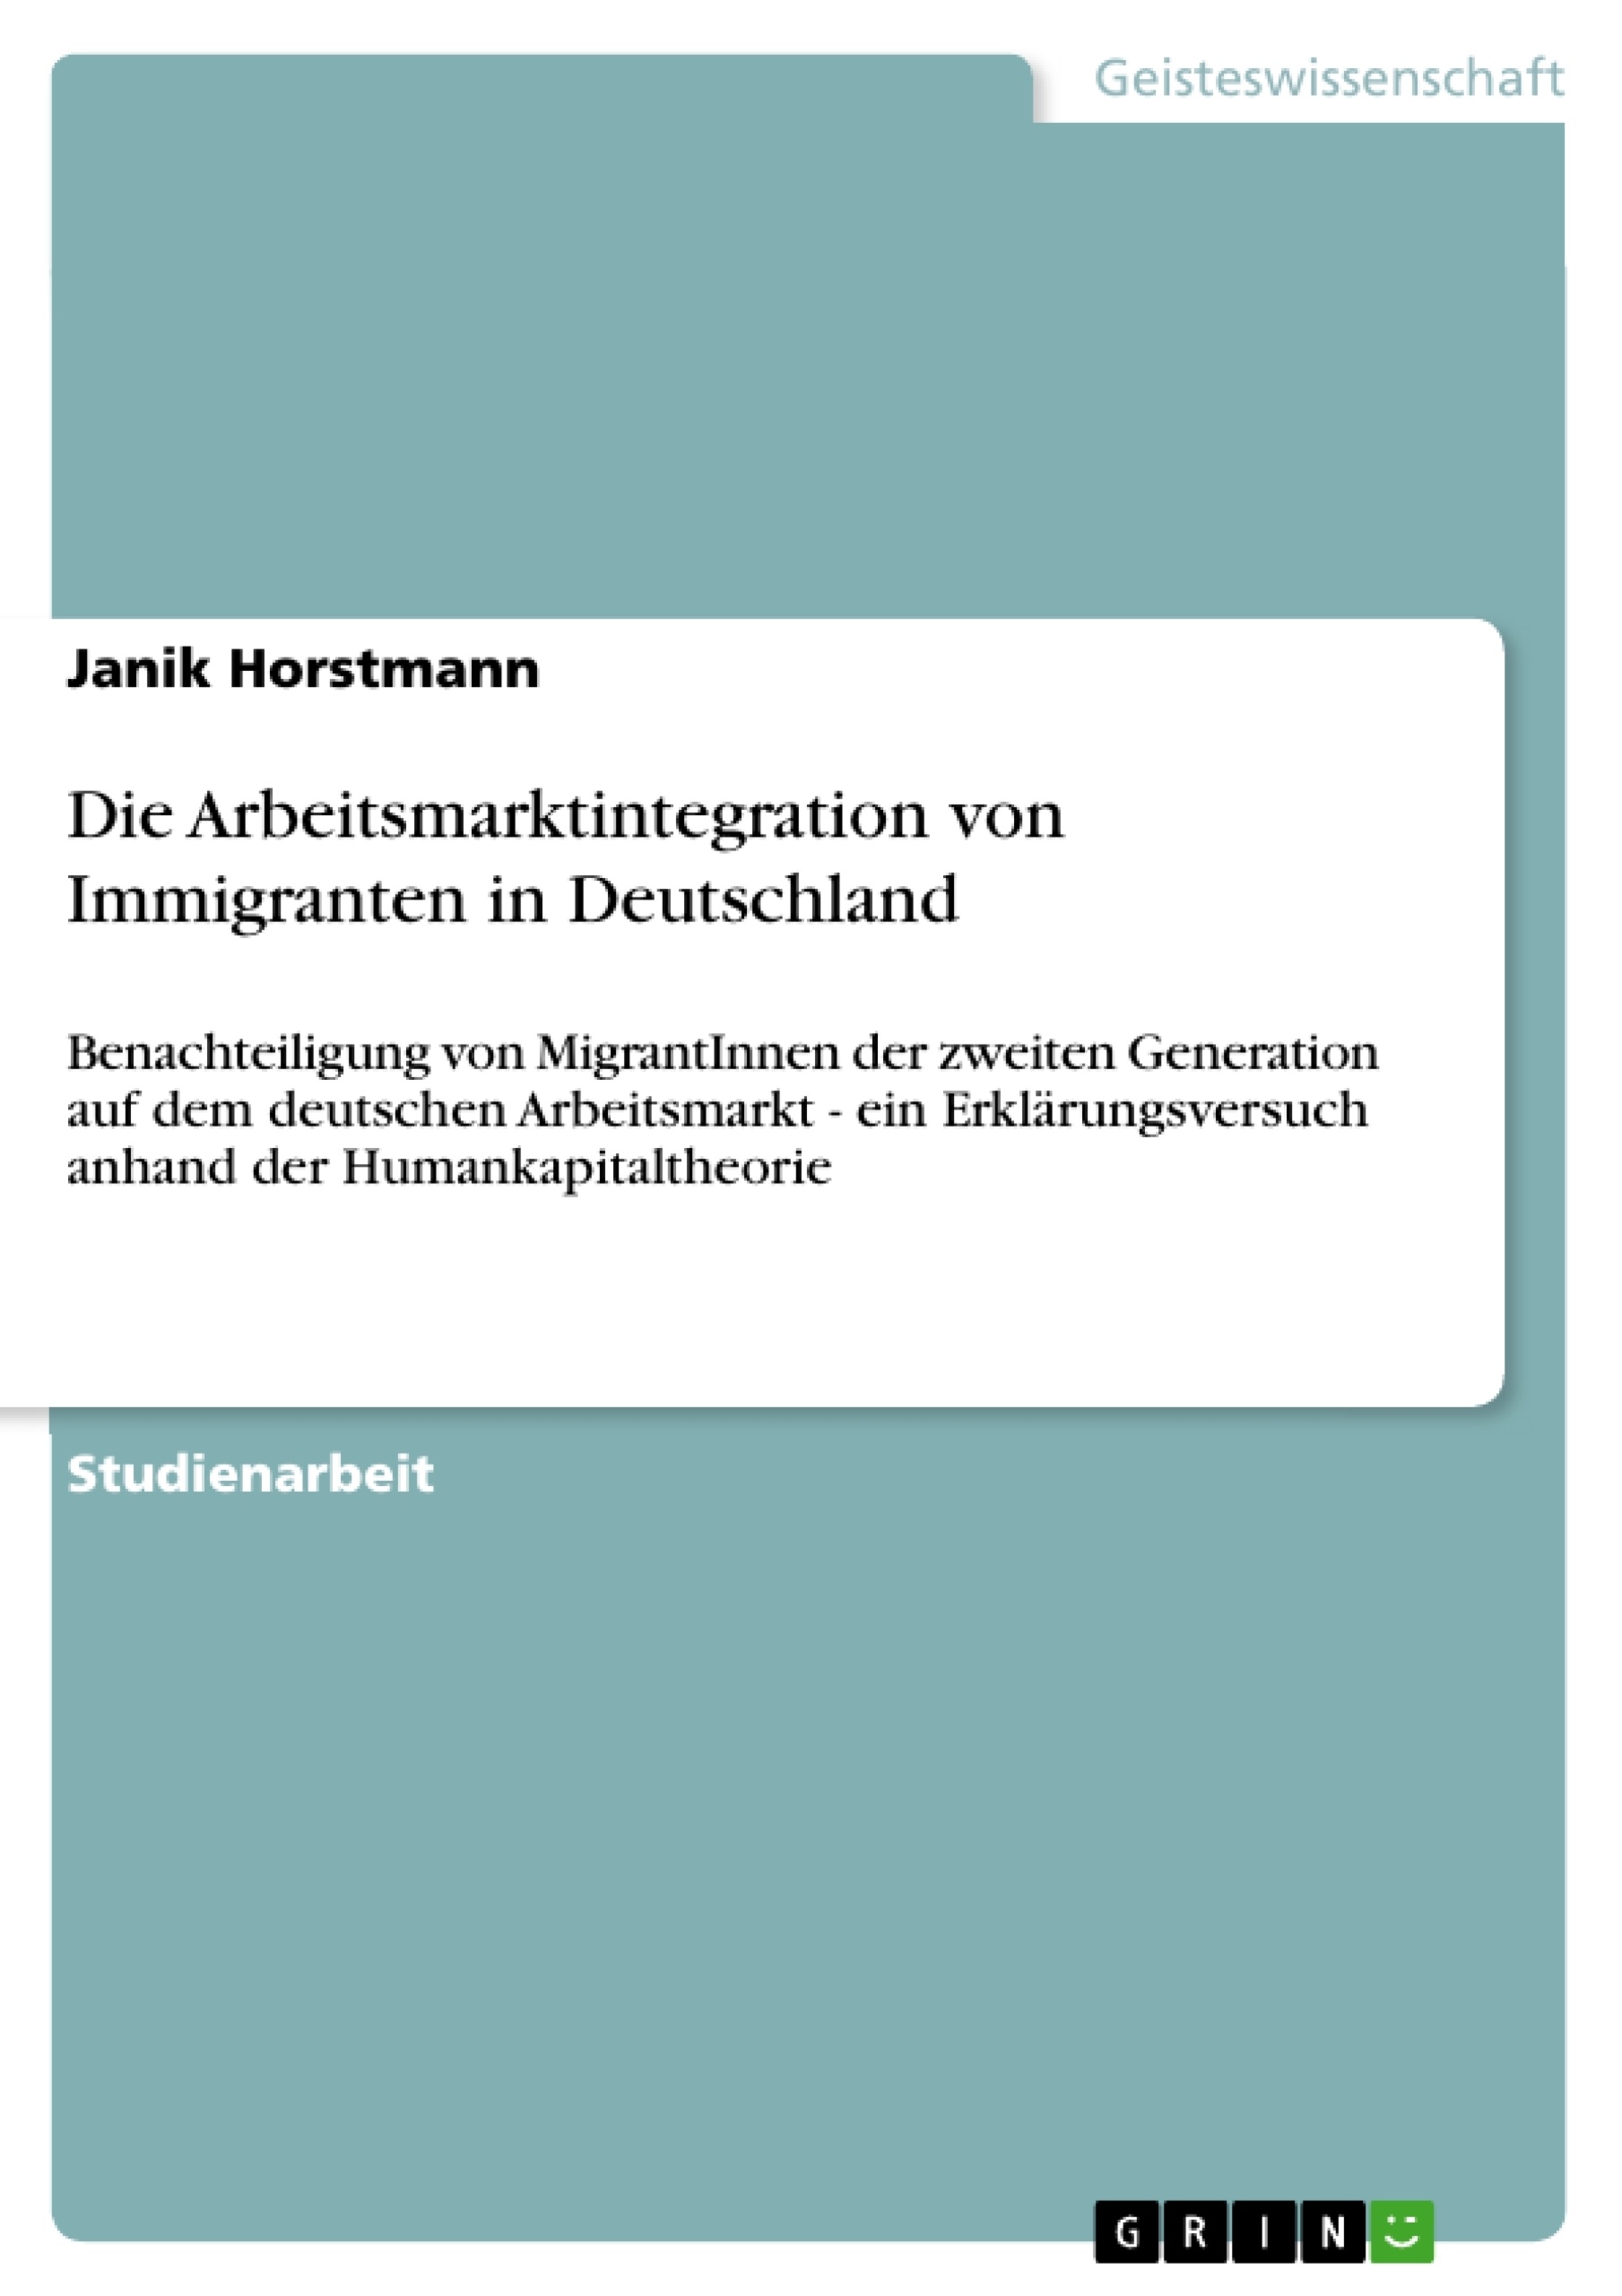 Titre: Die Arbeitsmarktintegration von Immigranten in Deutschland